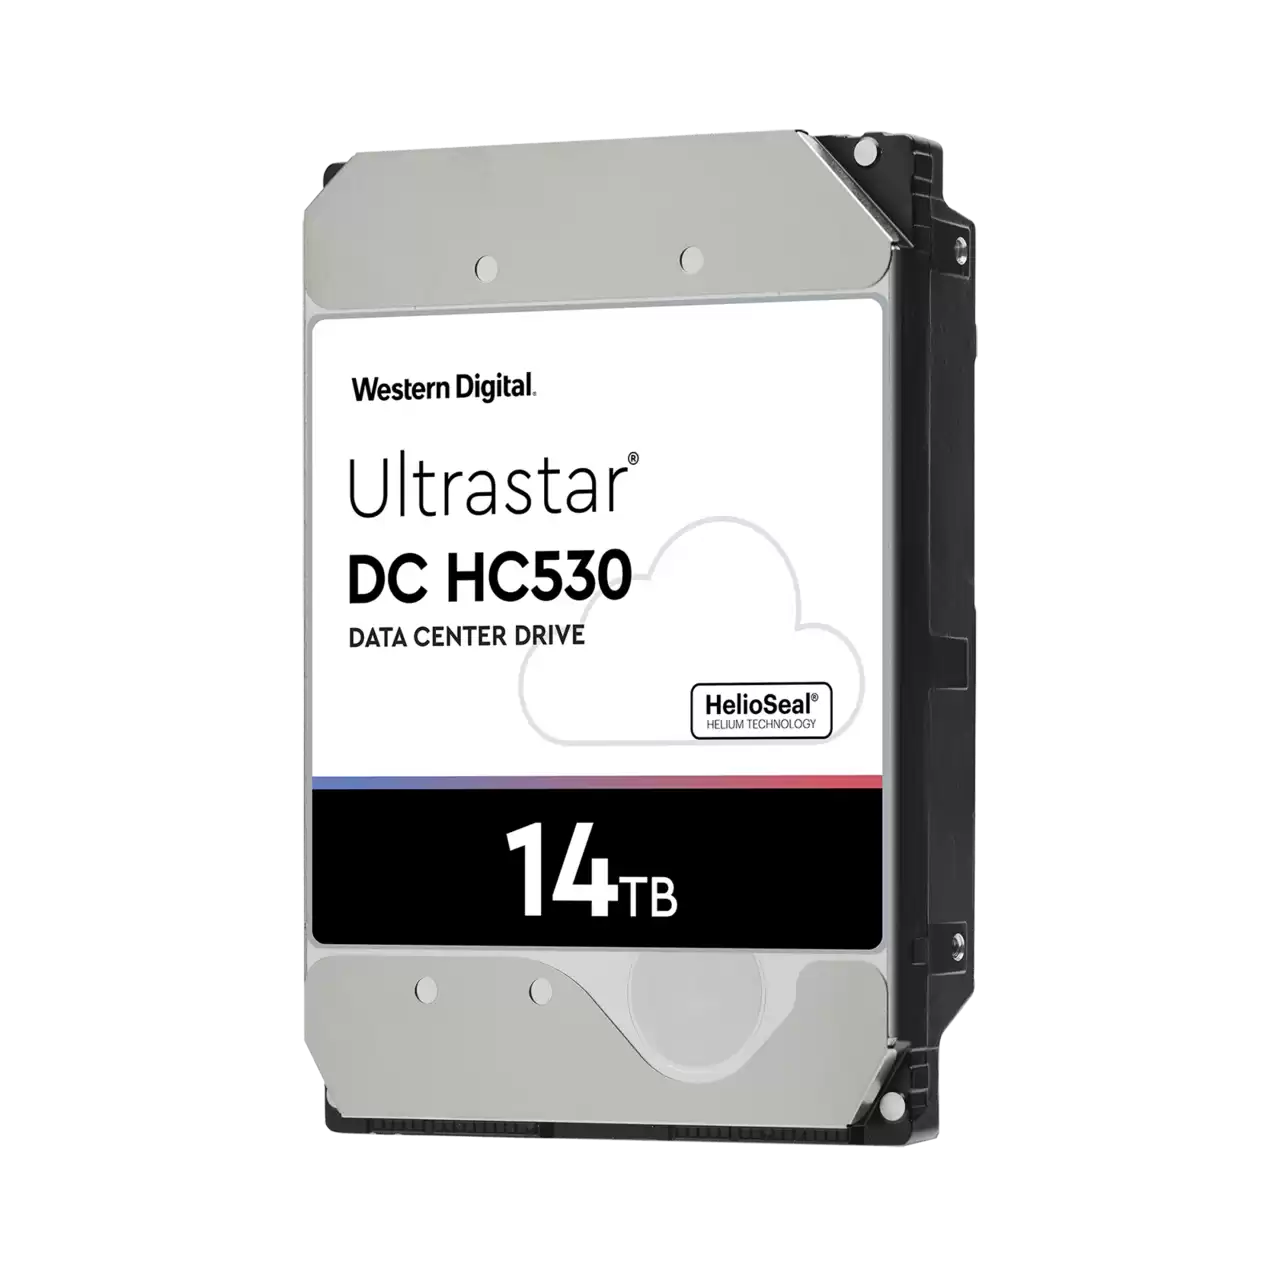 WD Ultrastar 14TB 3.5-inch